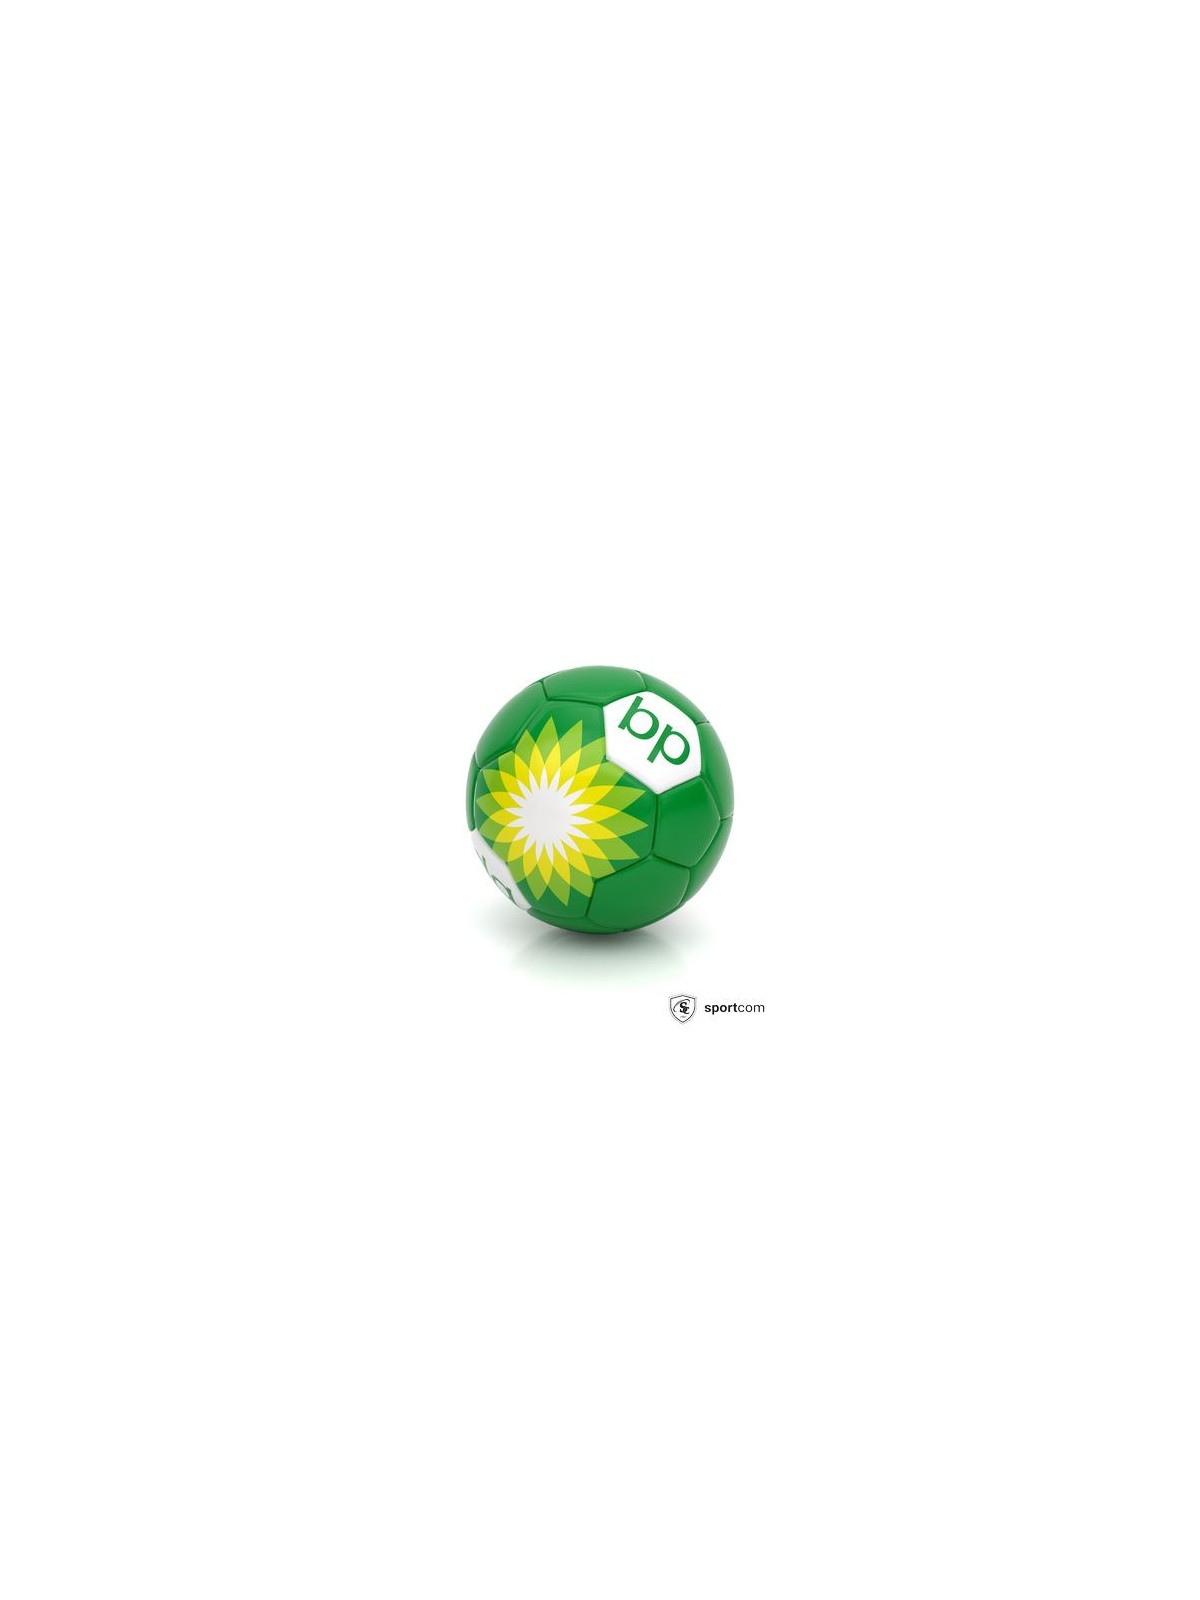 55-148 Ballon de football publicitaire PVC personnalisé